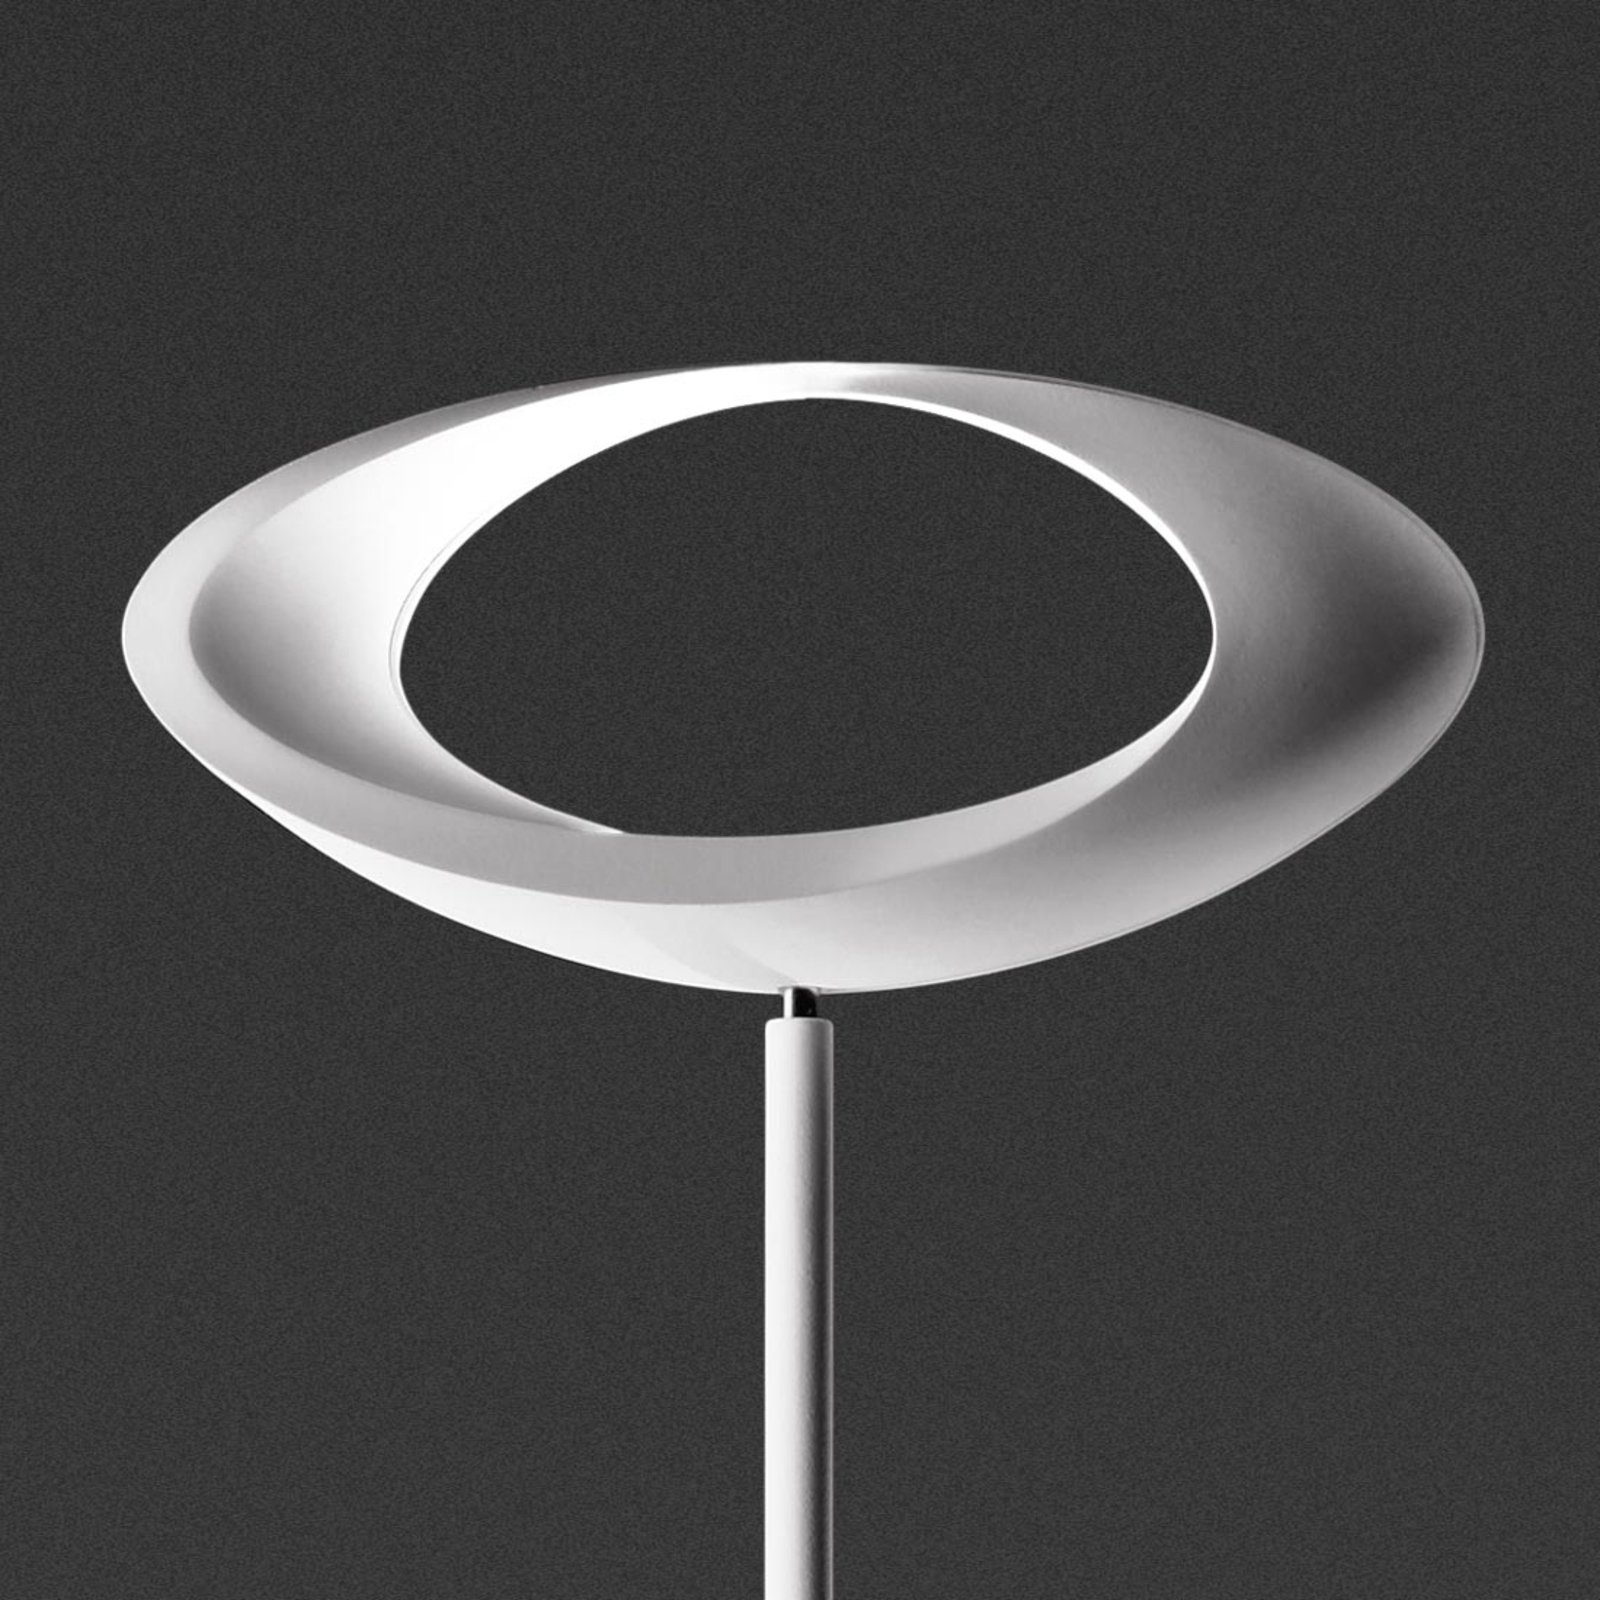 Artemide Cabildo - white LED floor lamp, 2700K